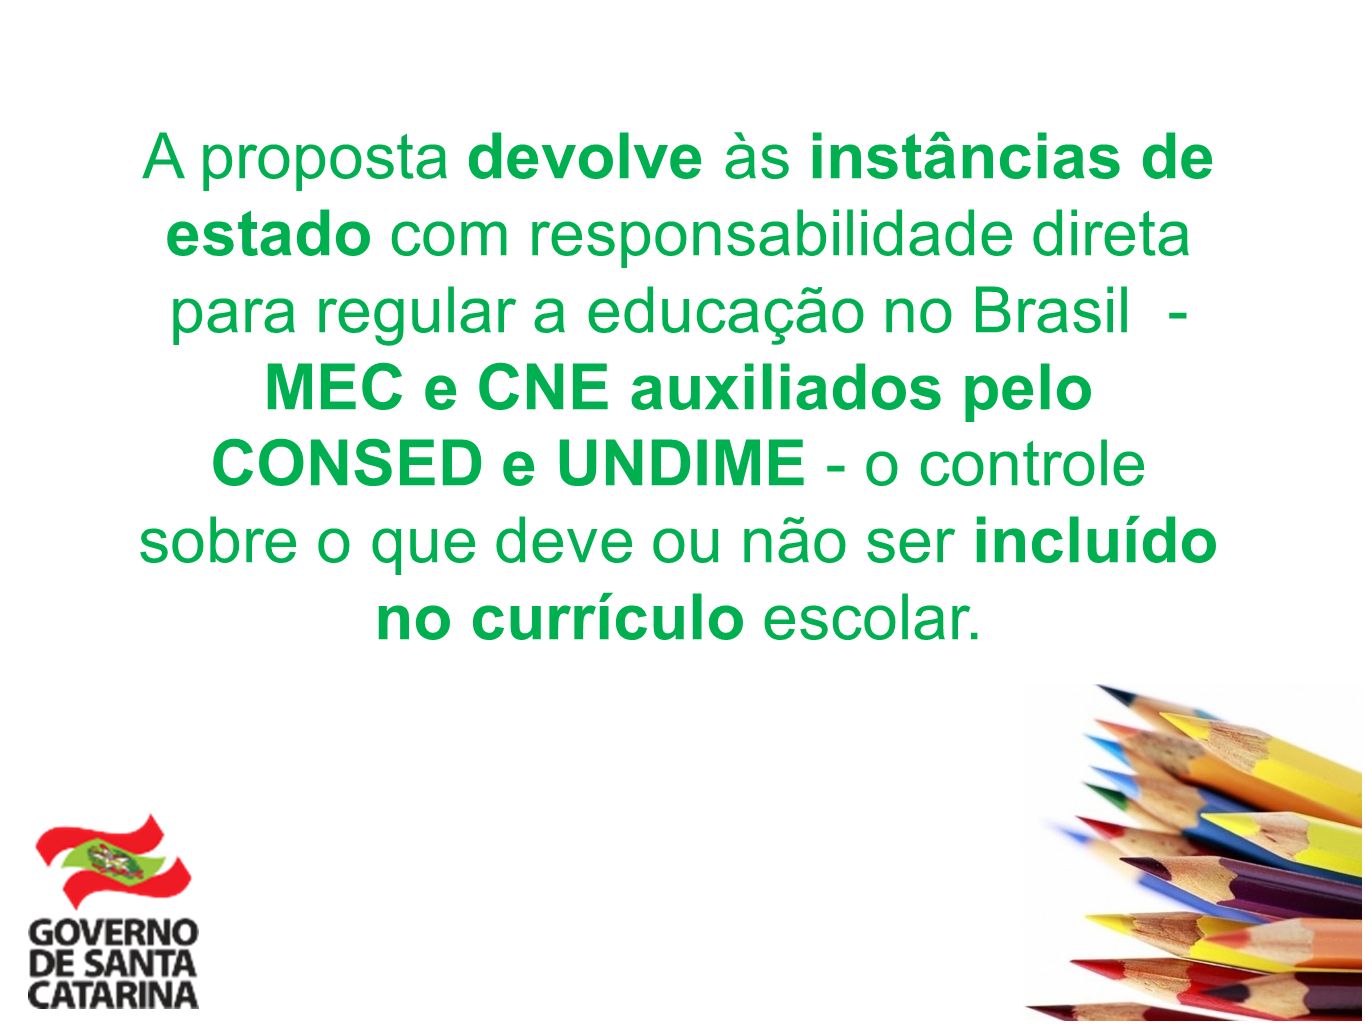 A proposta devolve às instâncias de estado com responsabilidade direta para regular a educação no Brasil - MEC e CNE auxiliados pelo CONSED e UNDIME - o controle sobre o que deve ou não ser incluído no currículo escolar.